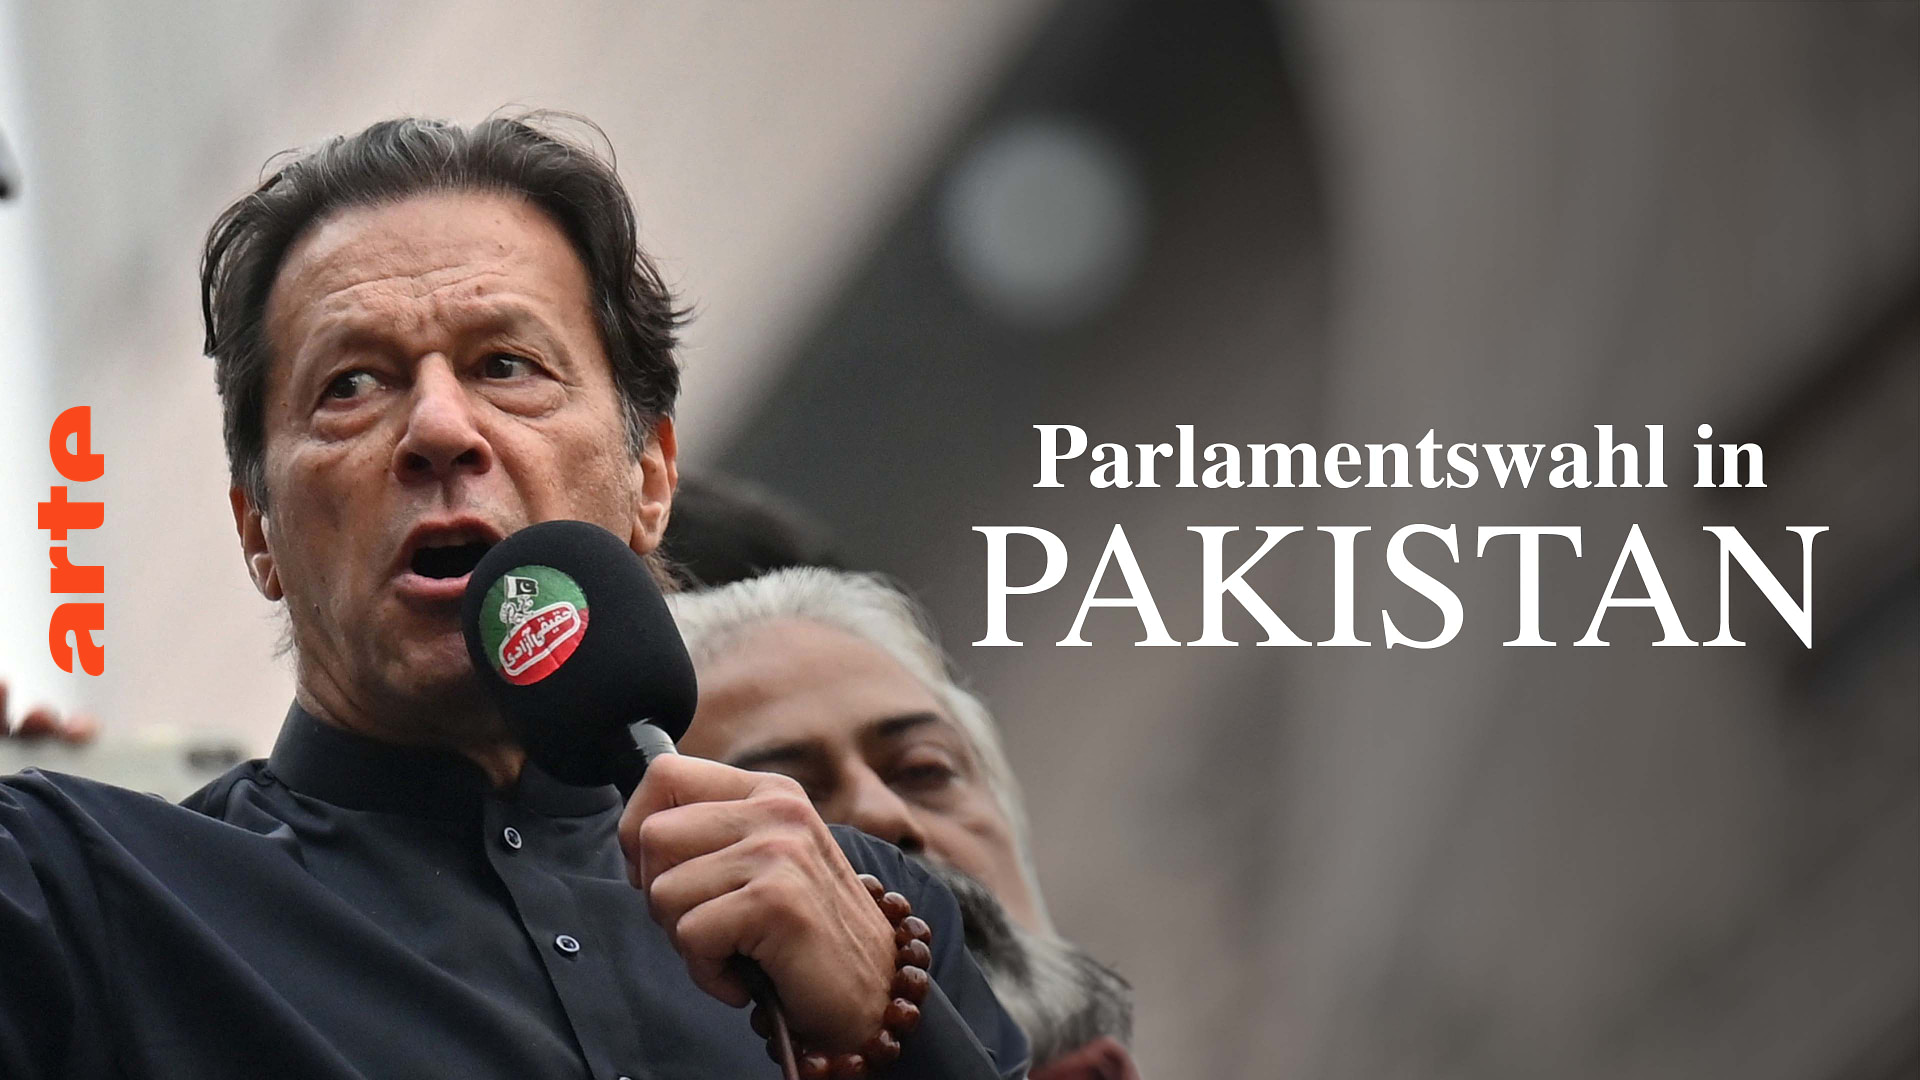 Parlamentswahl in Pakistan: Was steht auf dem Spiel?